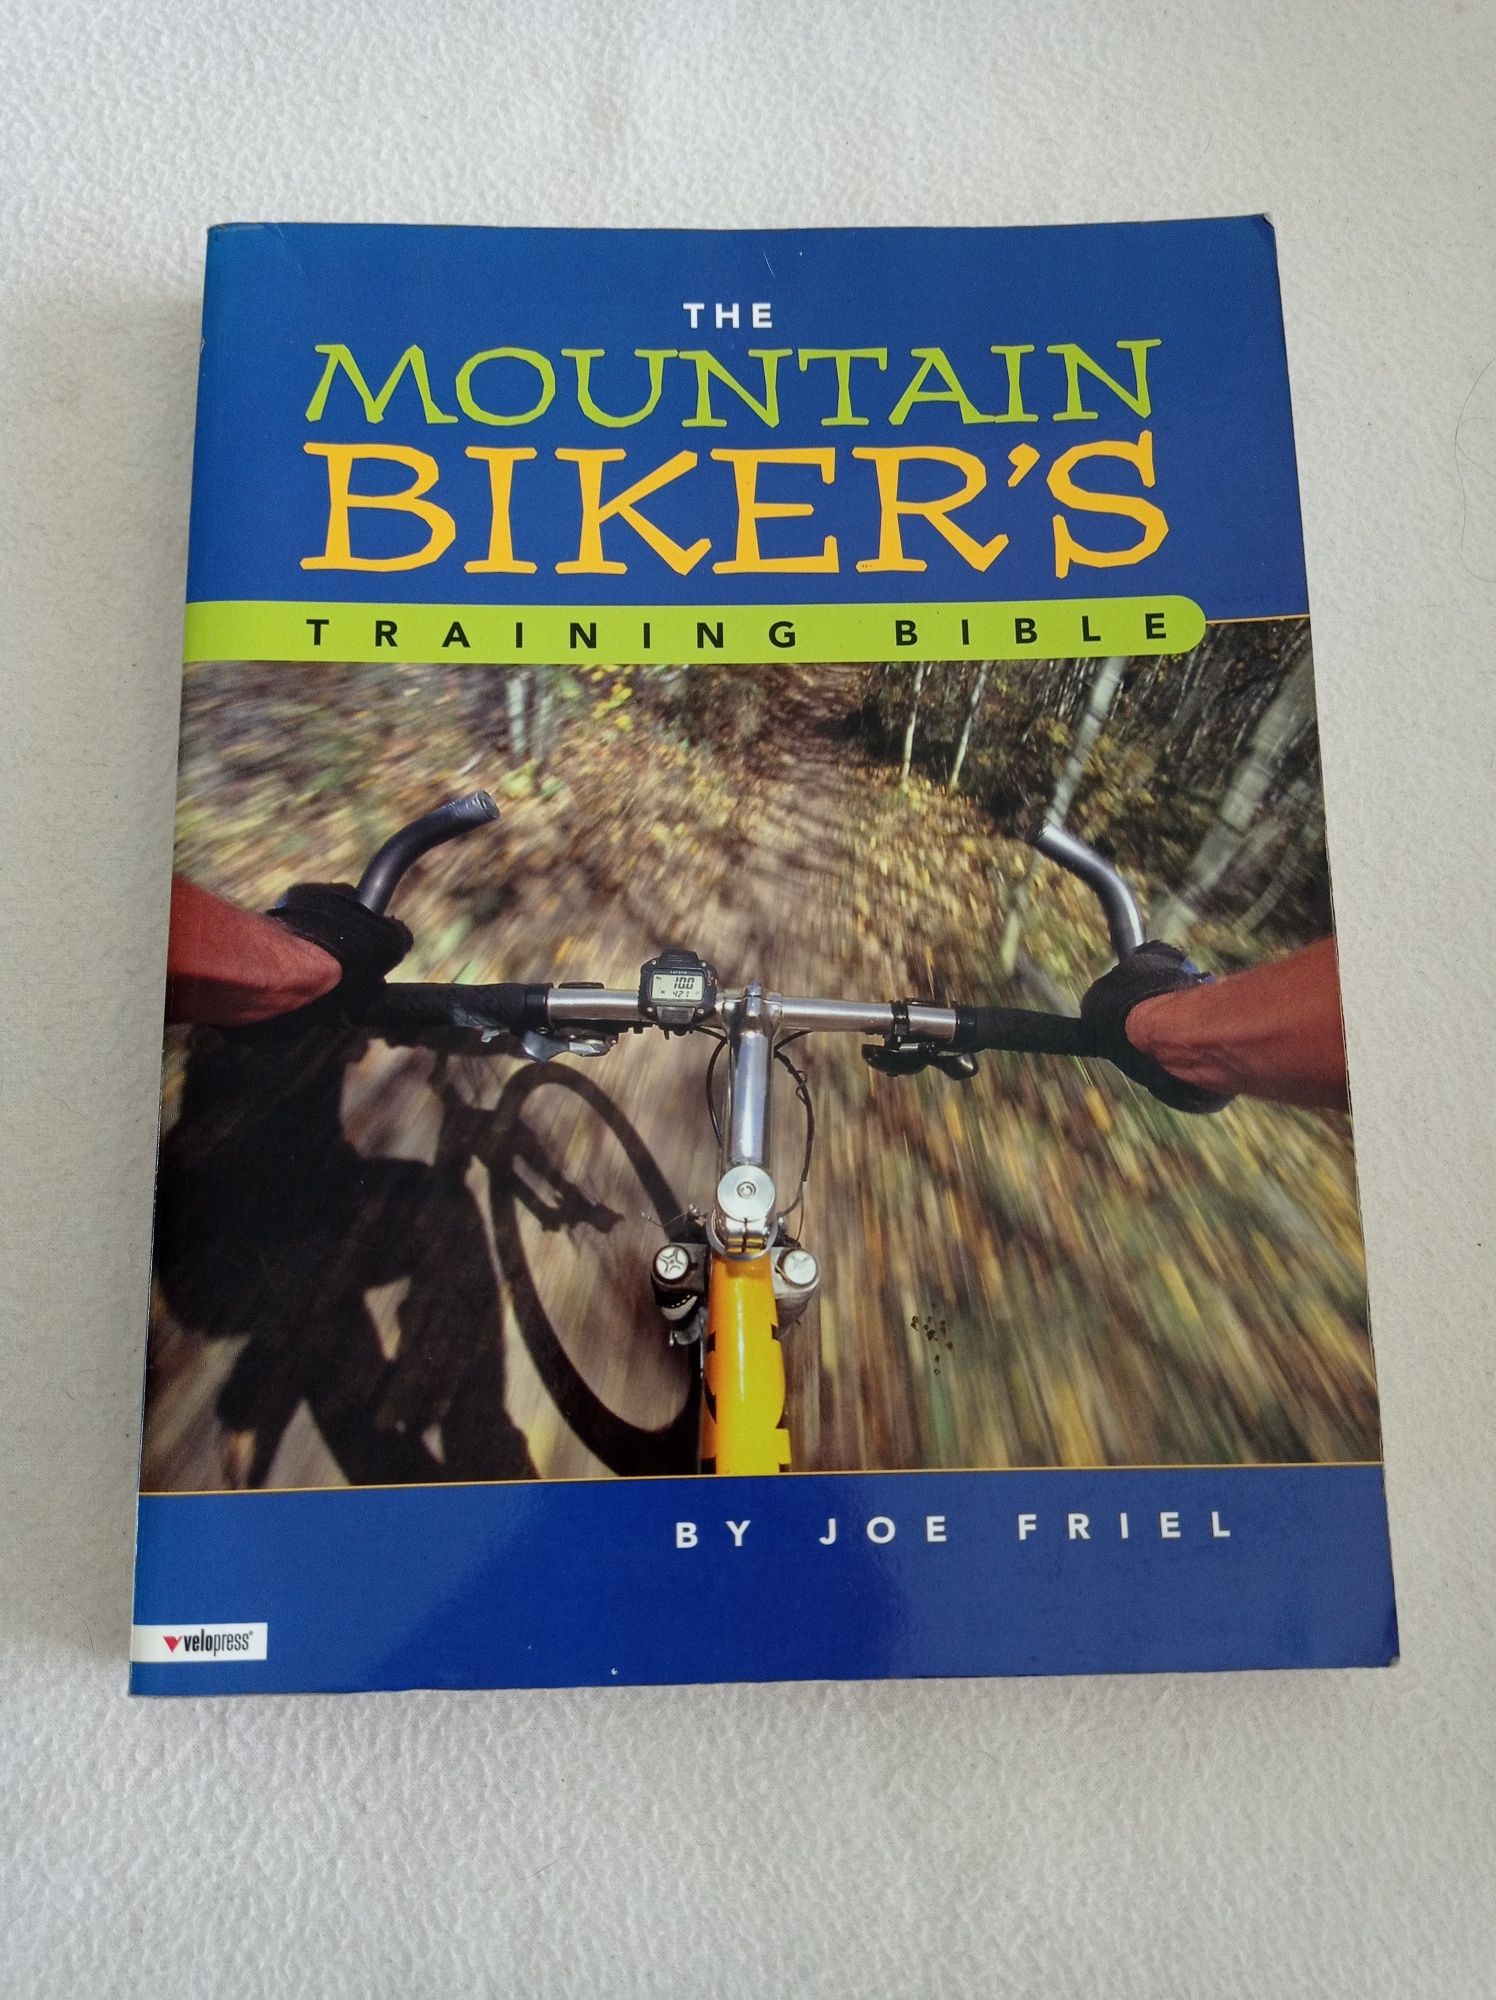 The mountain biker's training bible - Joe Friel